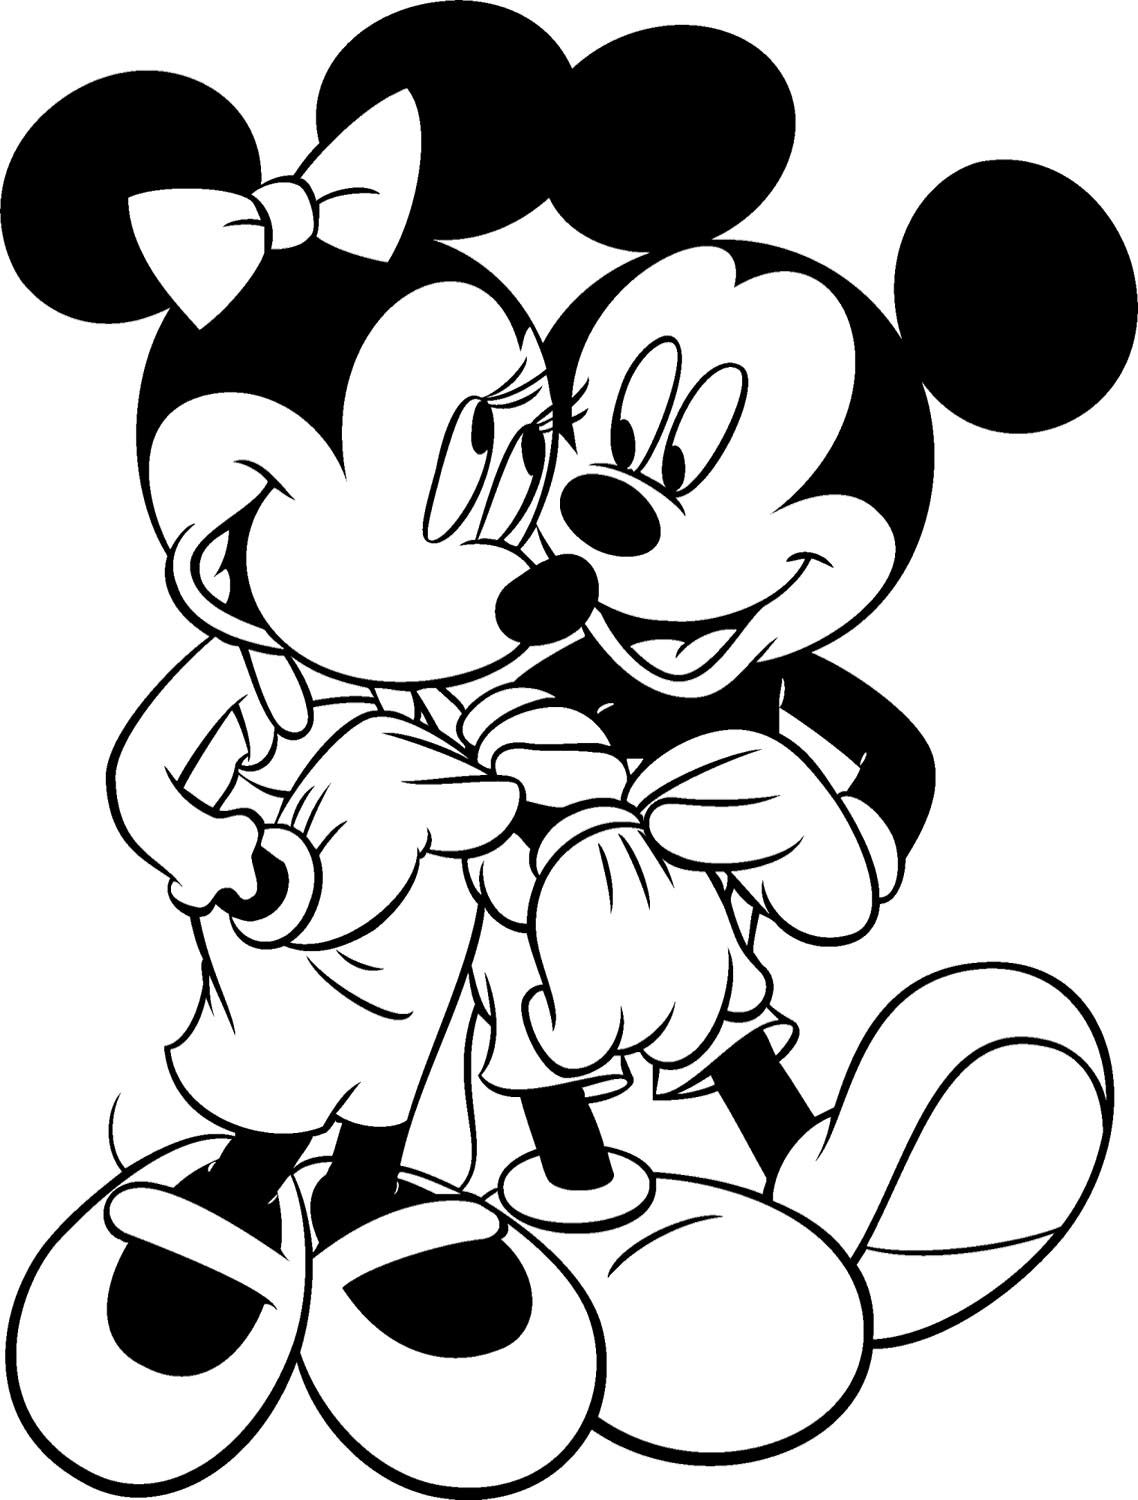 Chuột Mickey và những trang tô màu bạn gái xinh đẹp